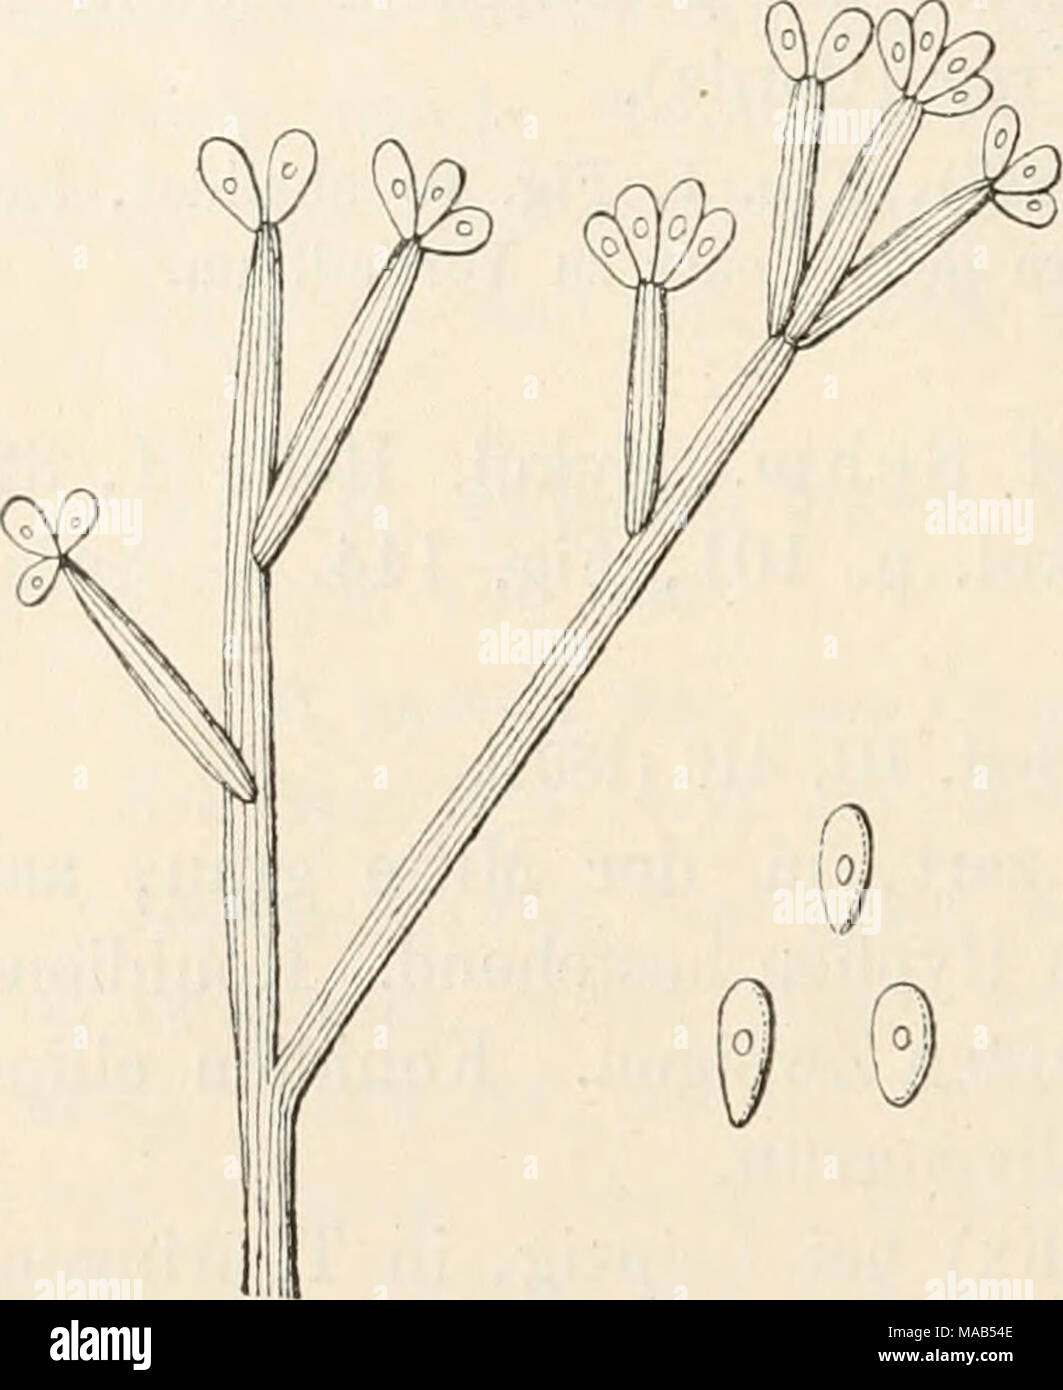 . Dr. L. Rabenhorst's Kryptogamen-Flora von Deutschland, Oesterreich und der Schweiz . Botrytis geniculata Corda. Konidienträger und Konidien, stark vergr. (Nach Saccardo.) Untergattung IL Polyactis Link. 618. B. cinerea Pers, Tent. Disp, meth. Fiing. p. 46 (1797), Tab. 3, Fig. 10; Syn. p. 690 (1801). — Link Spec. Plant. I, 60. — Fries Syst. Myc. III, 396. — Sacc. Syll. lY, 129. — De Wild, et Dur. Prodr. Fl. Belg. II, 312. — Wehmer in Beitr. z. Kenntn. einh. Pilze II, 81, Tab. III, Fig. 12—14. - Lindau in Yerhandl. Bot. Yer. Prov. Brandenb. XLYII, 64 (1905). Syn. Botrytis cinerea Pers. var. sc Stock Photo